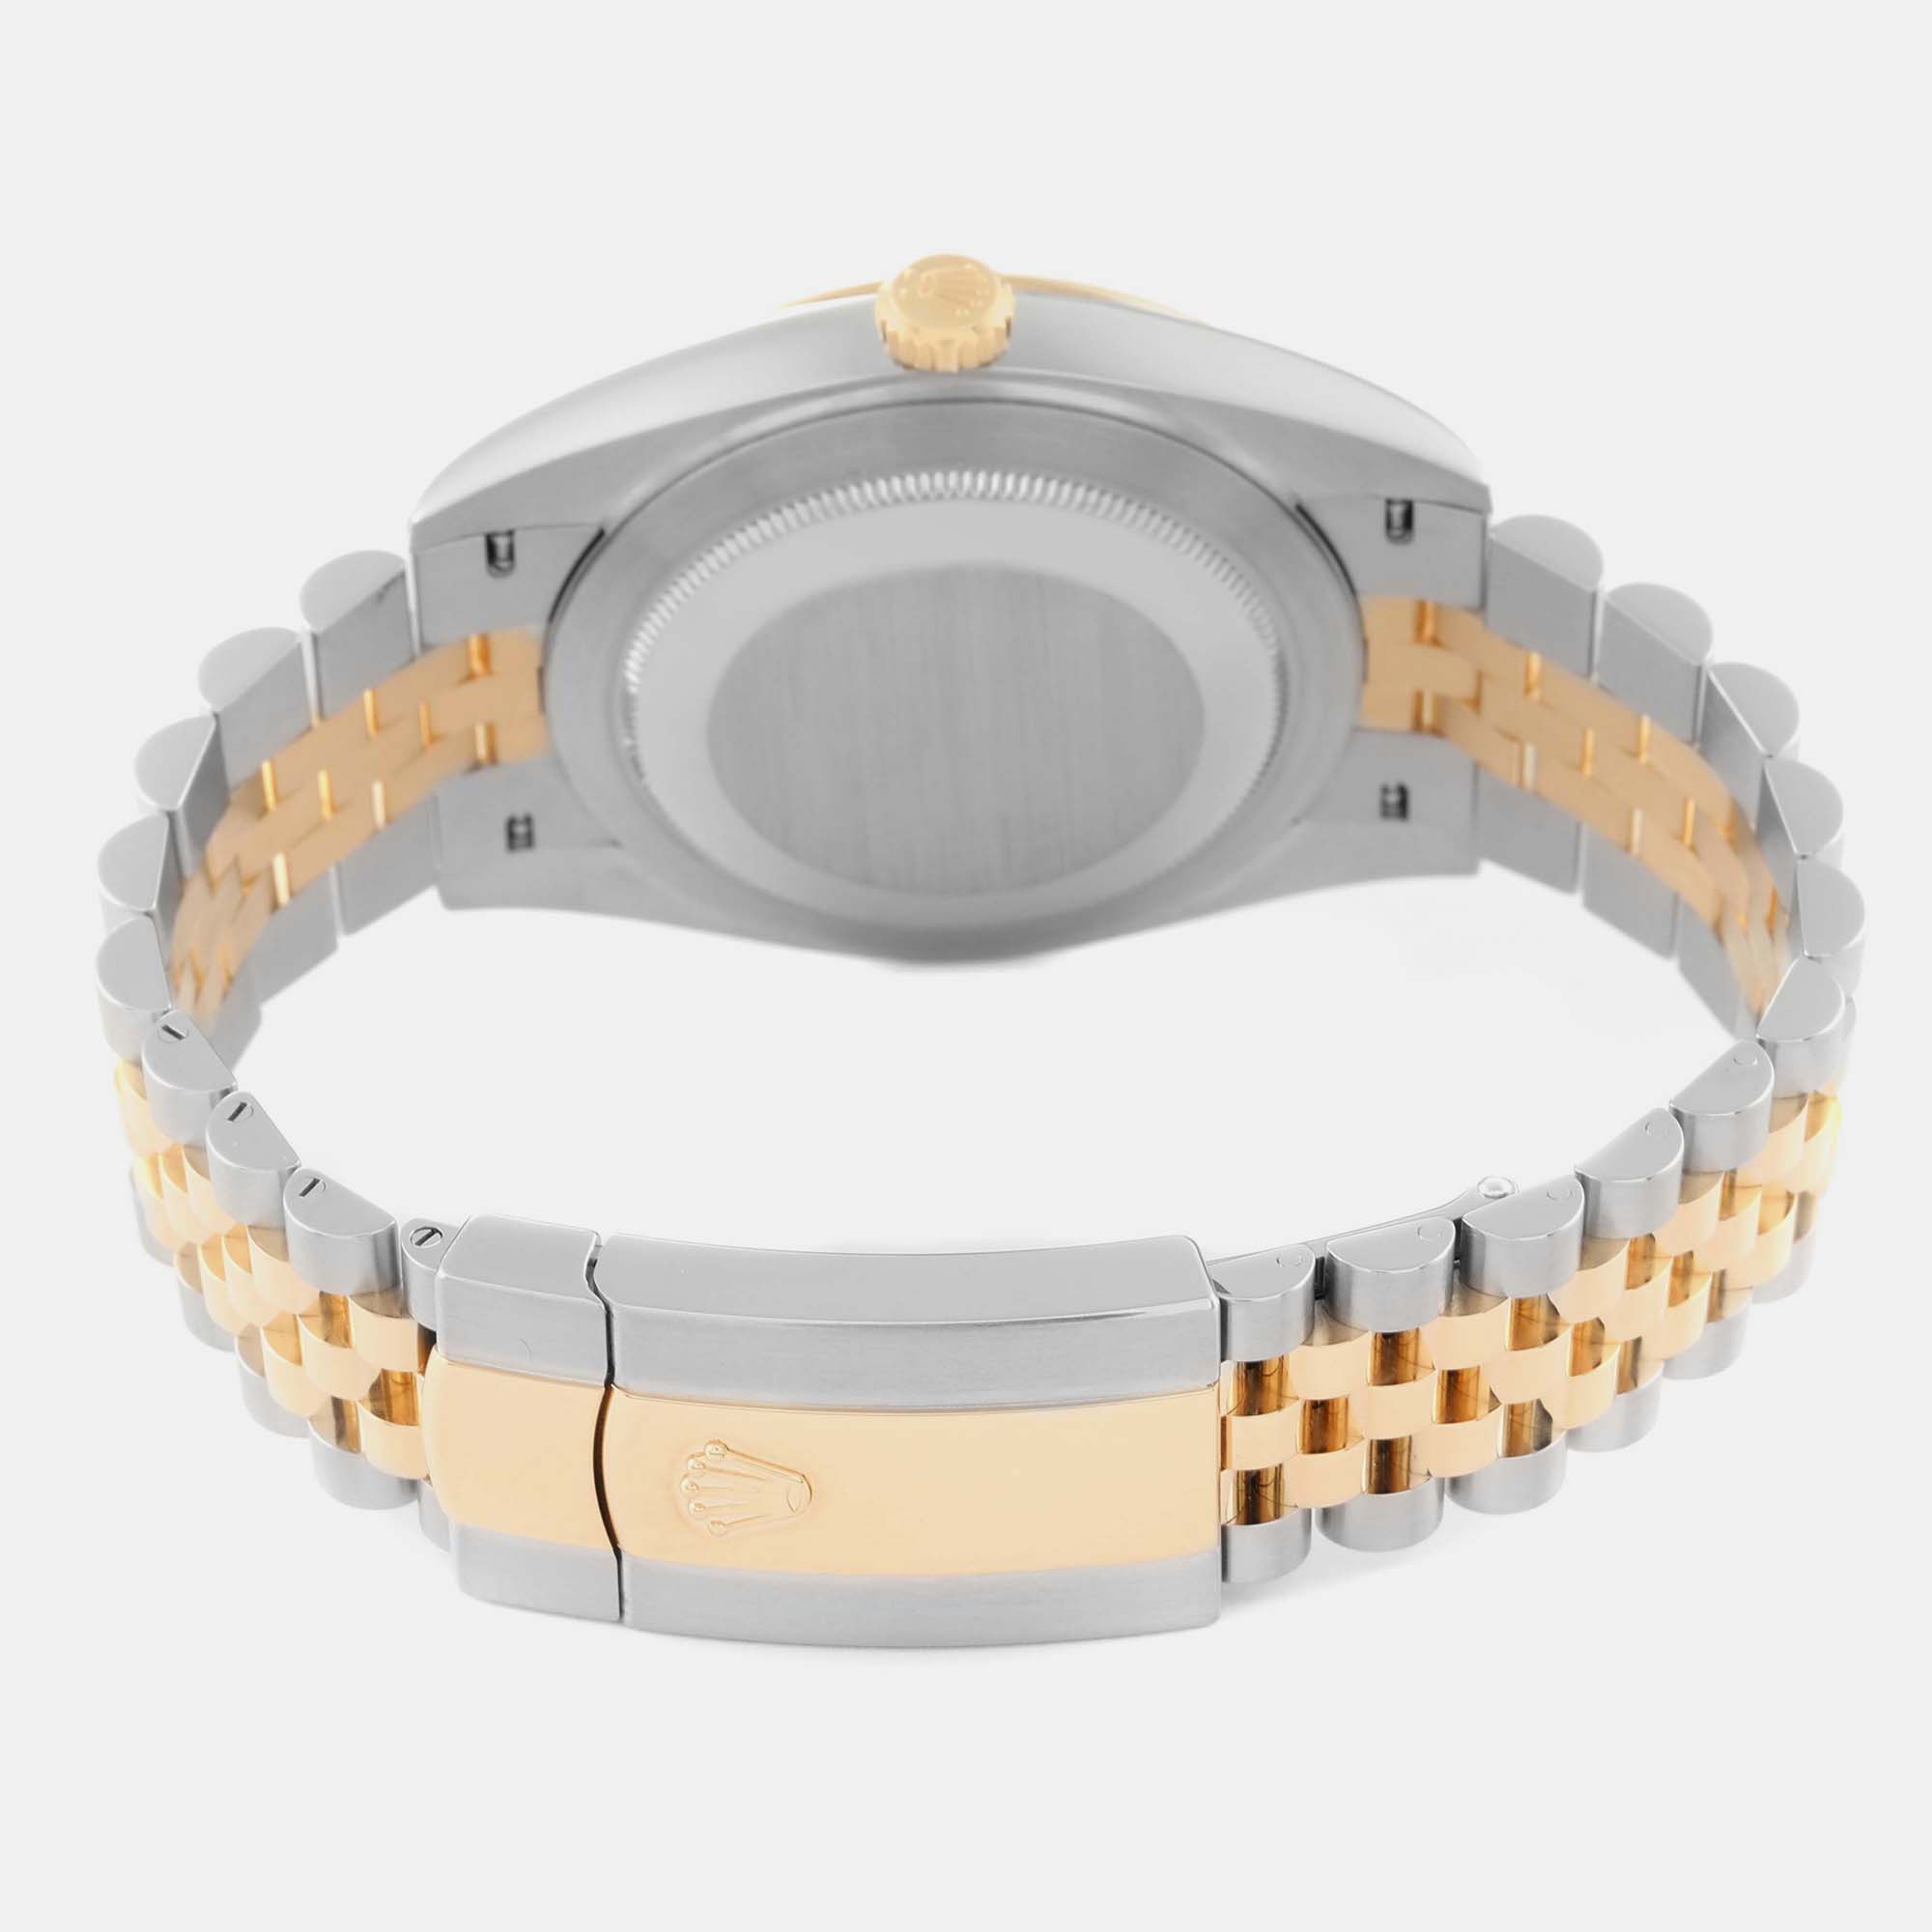 Rolex Datejust Steel Yellow Gold Wimbledon Dial Men's Watch 126333 41 Mm